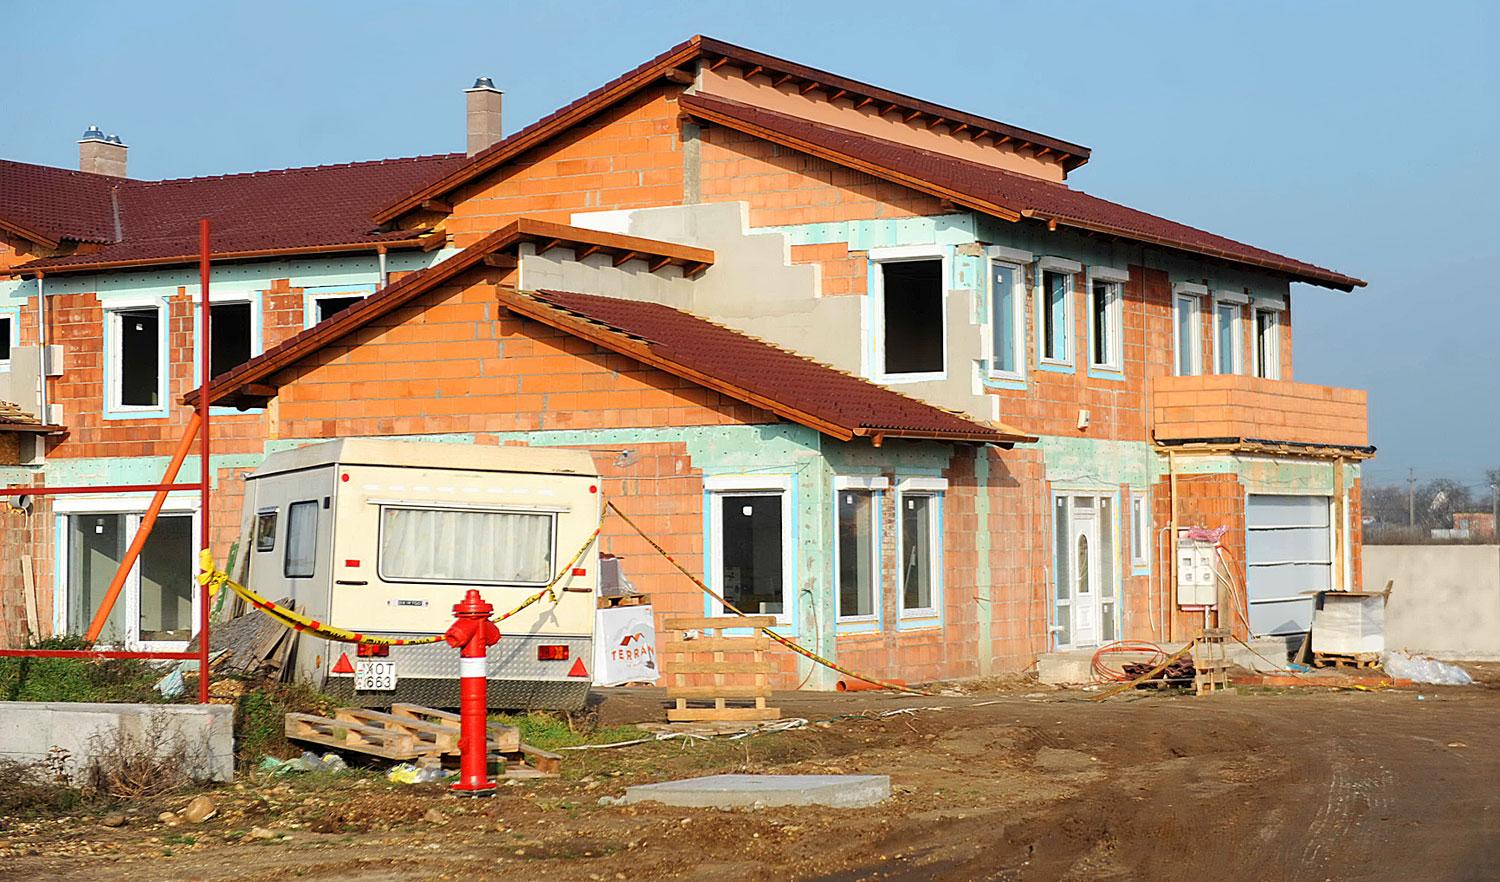 Háromszáz négyzetméteres ház építését szociálpolitikai okból támogatná az állam?